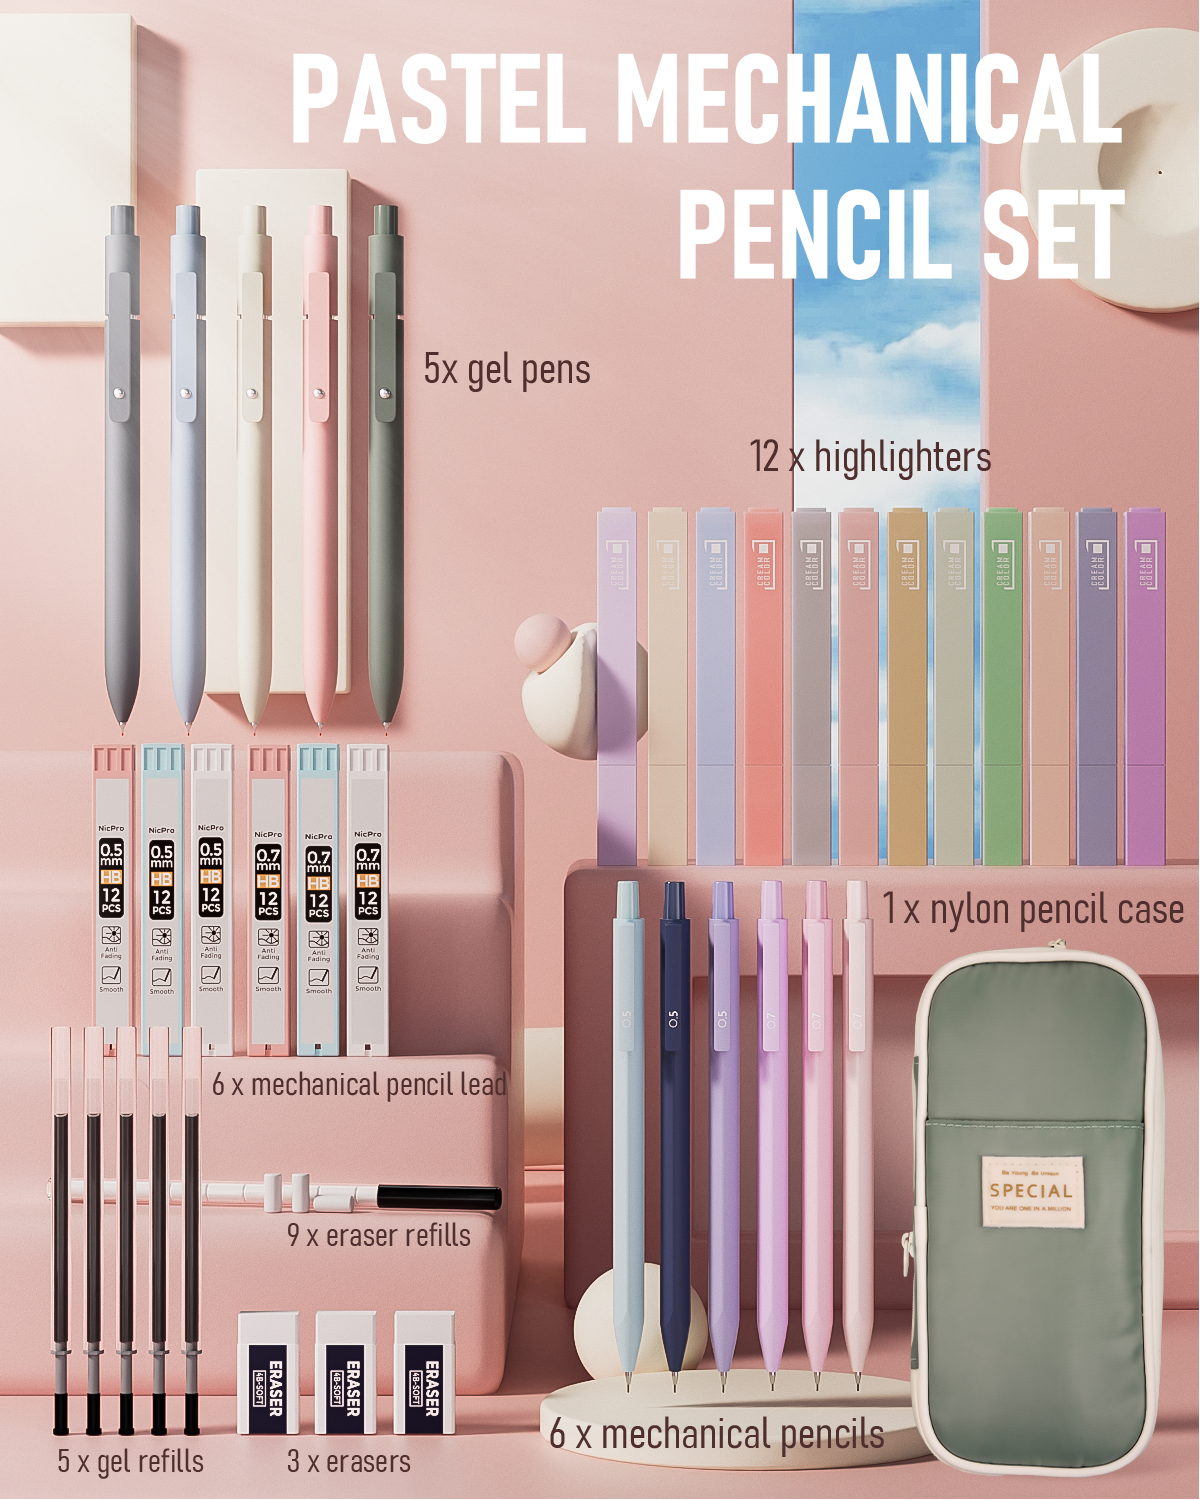 SET of 12 Colored Ink Pens 0.5mm, Kawaii Pens, Cute Gel Pens